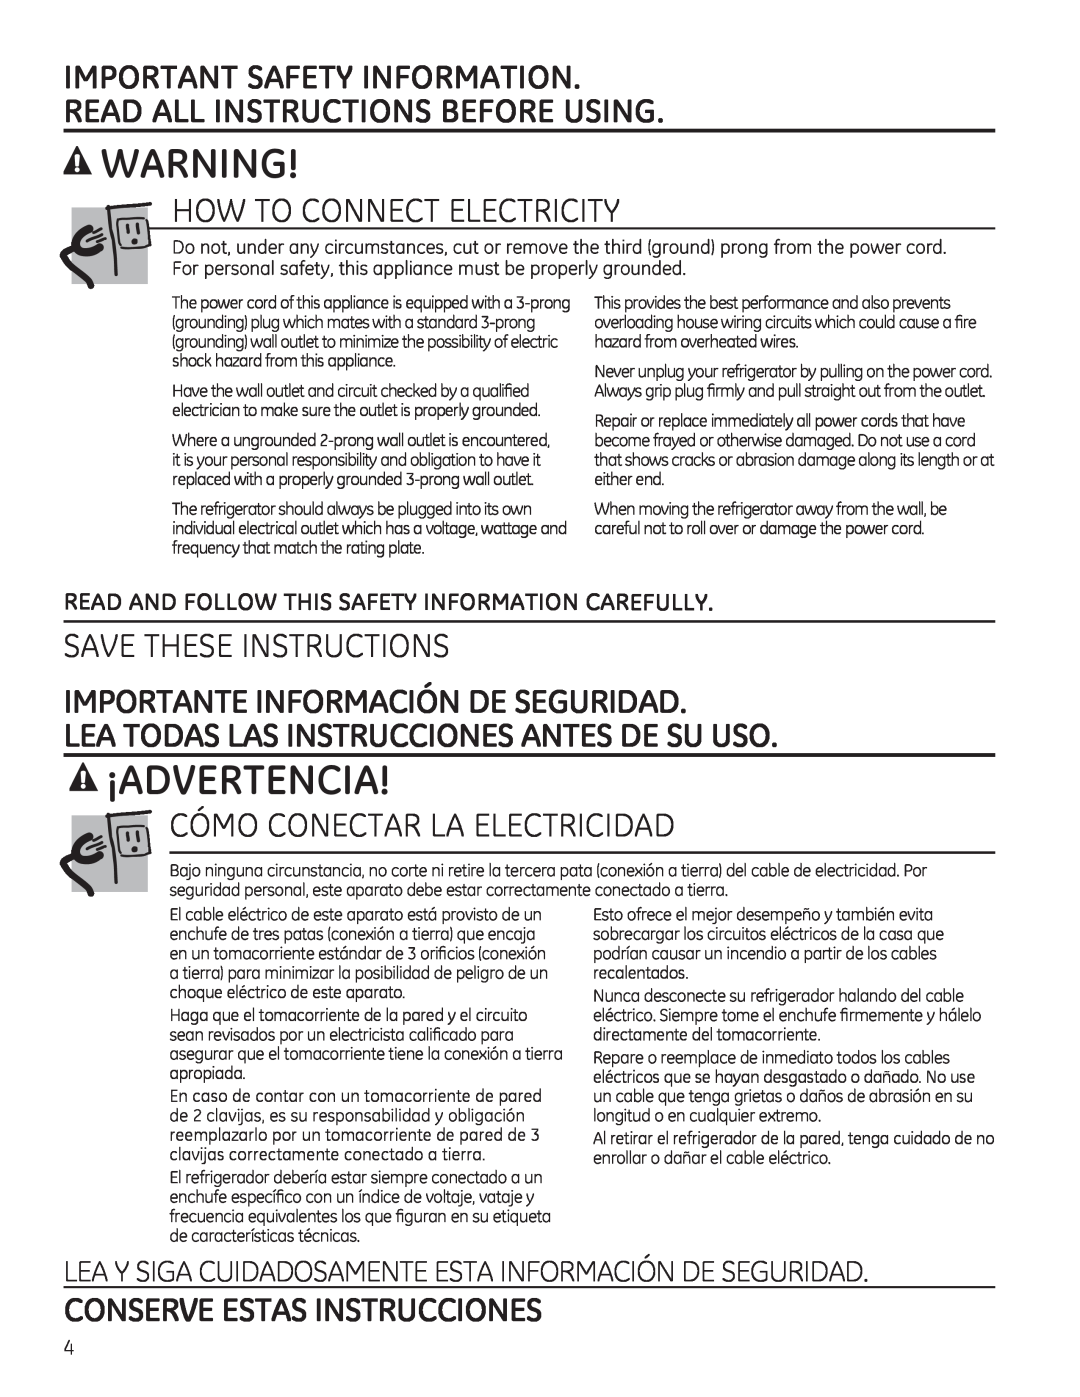 GE 17, 16 ¡Advertencia, How To Connect Electricity, Save These Instructions, Cómo Conectar La Electricidad 